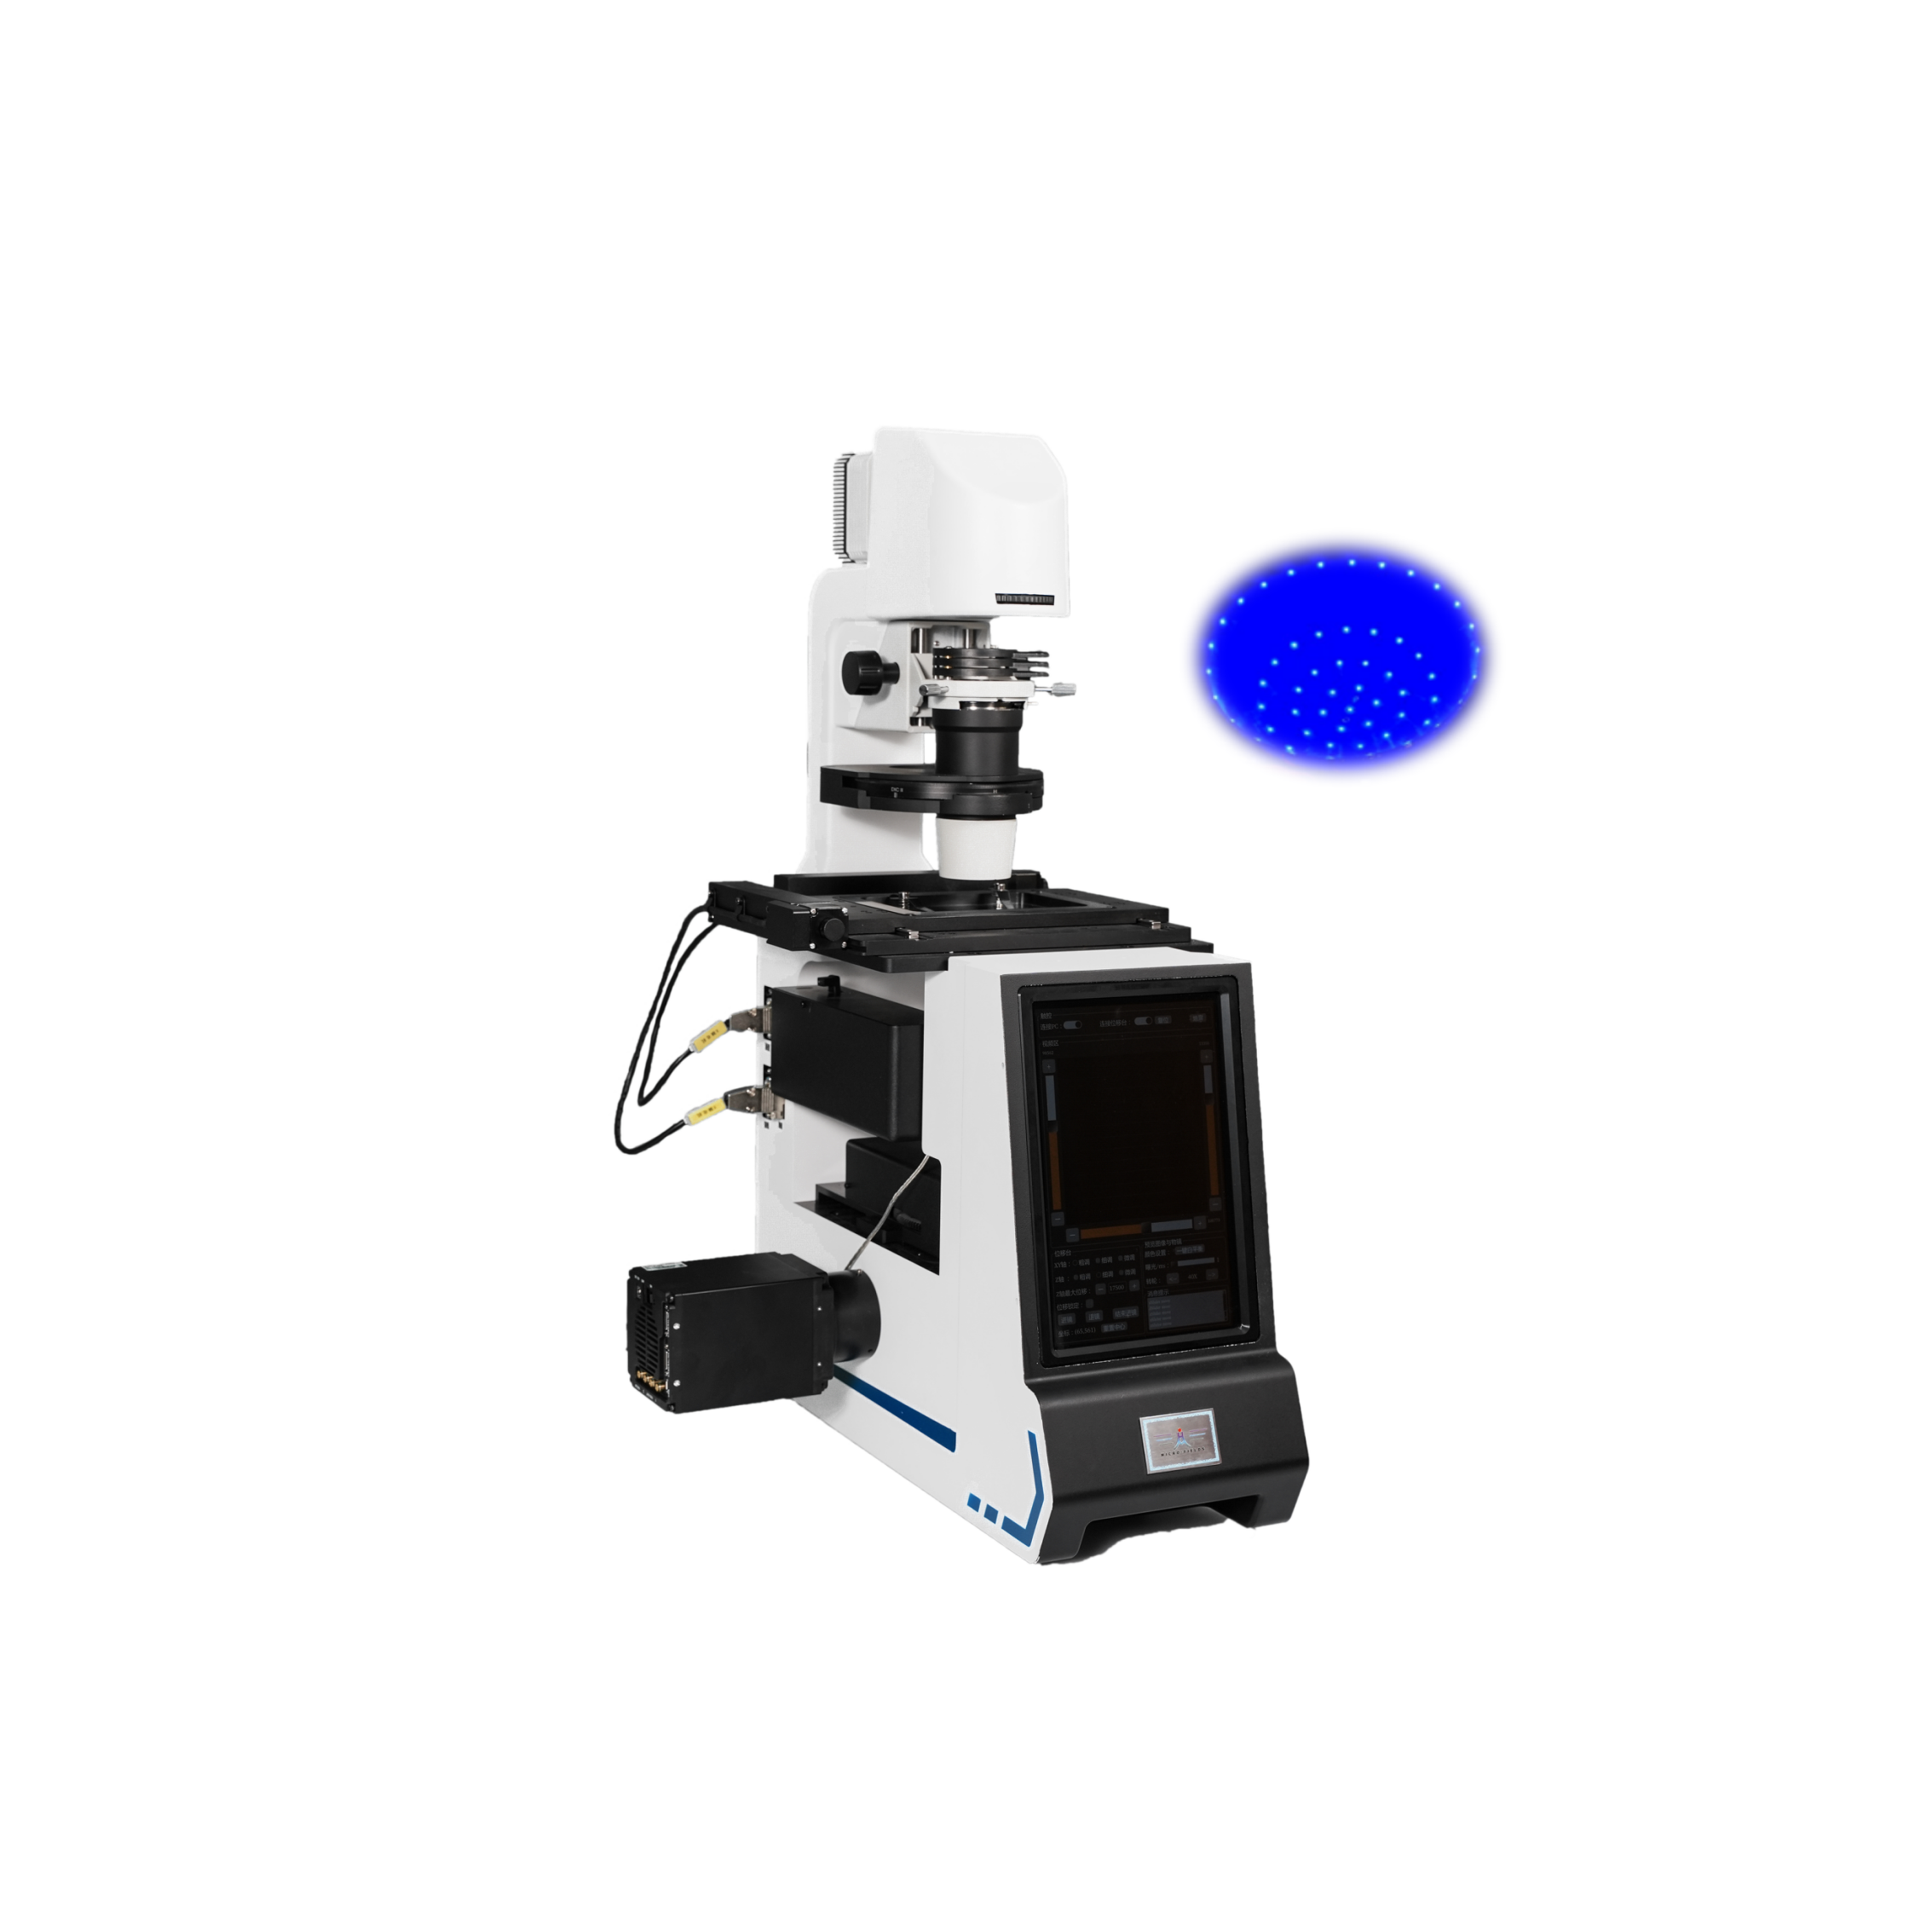 国产傅里叶叠层显微成像显微镜（FPM）不受荧光标记限制